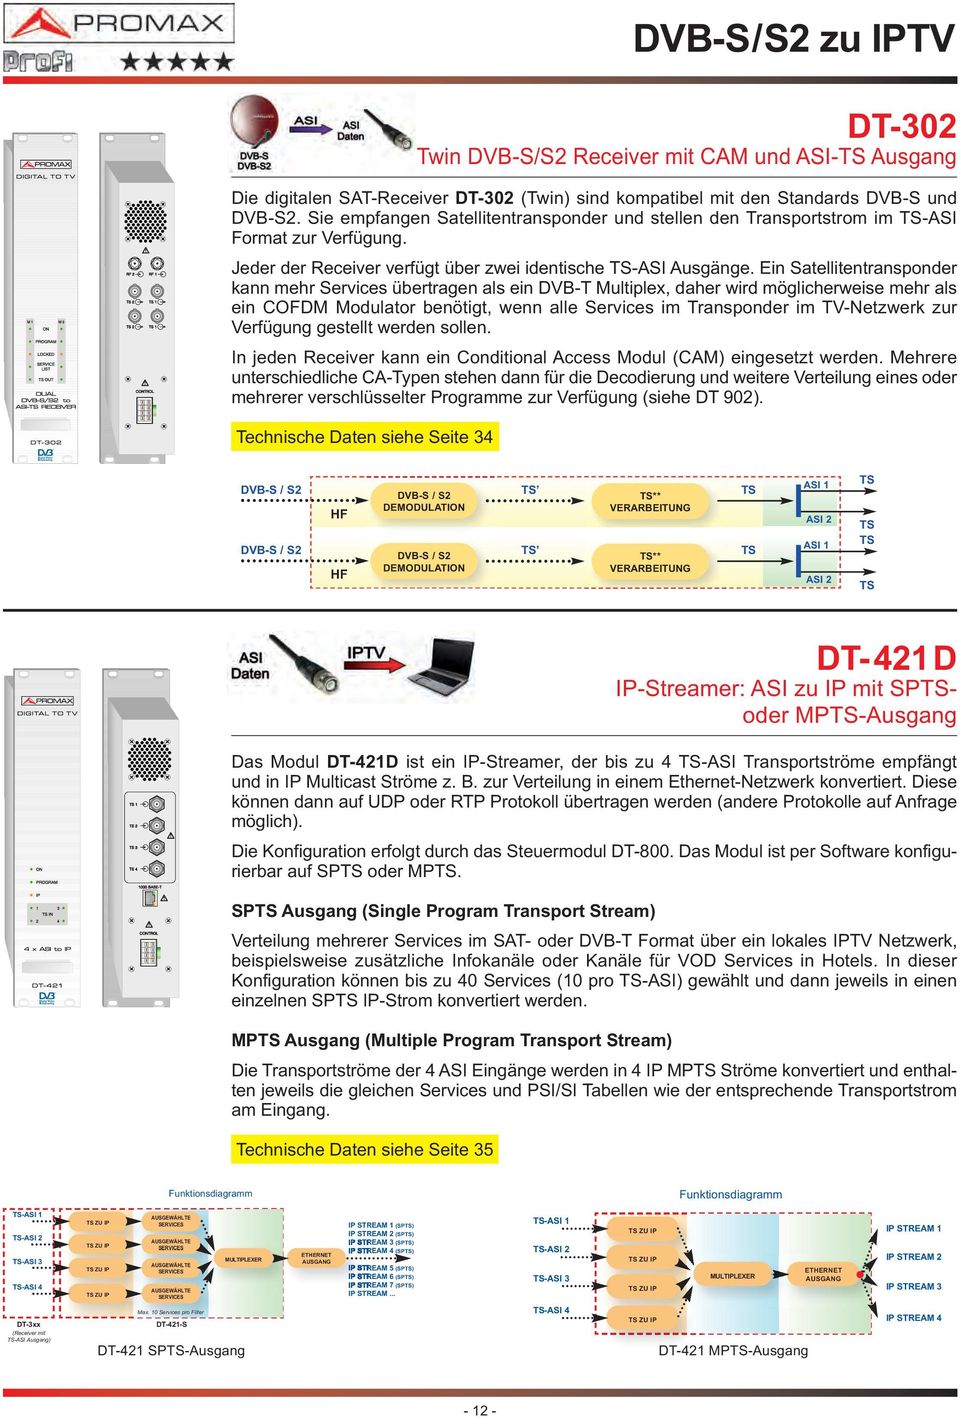 Ein Satellitentransponder kann mehr Services übertragen als ein Multiplex, daher wird möglicherweise mehr als ein COFDM Modulator benötigt, wenn alle Services im Transponder im TV-Netzwerk zur